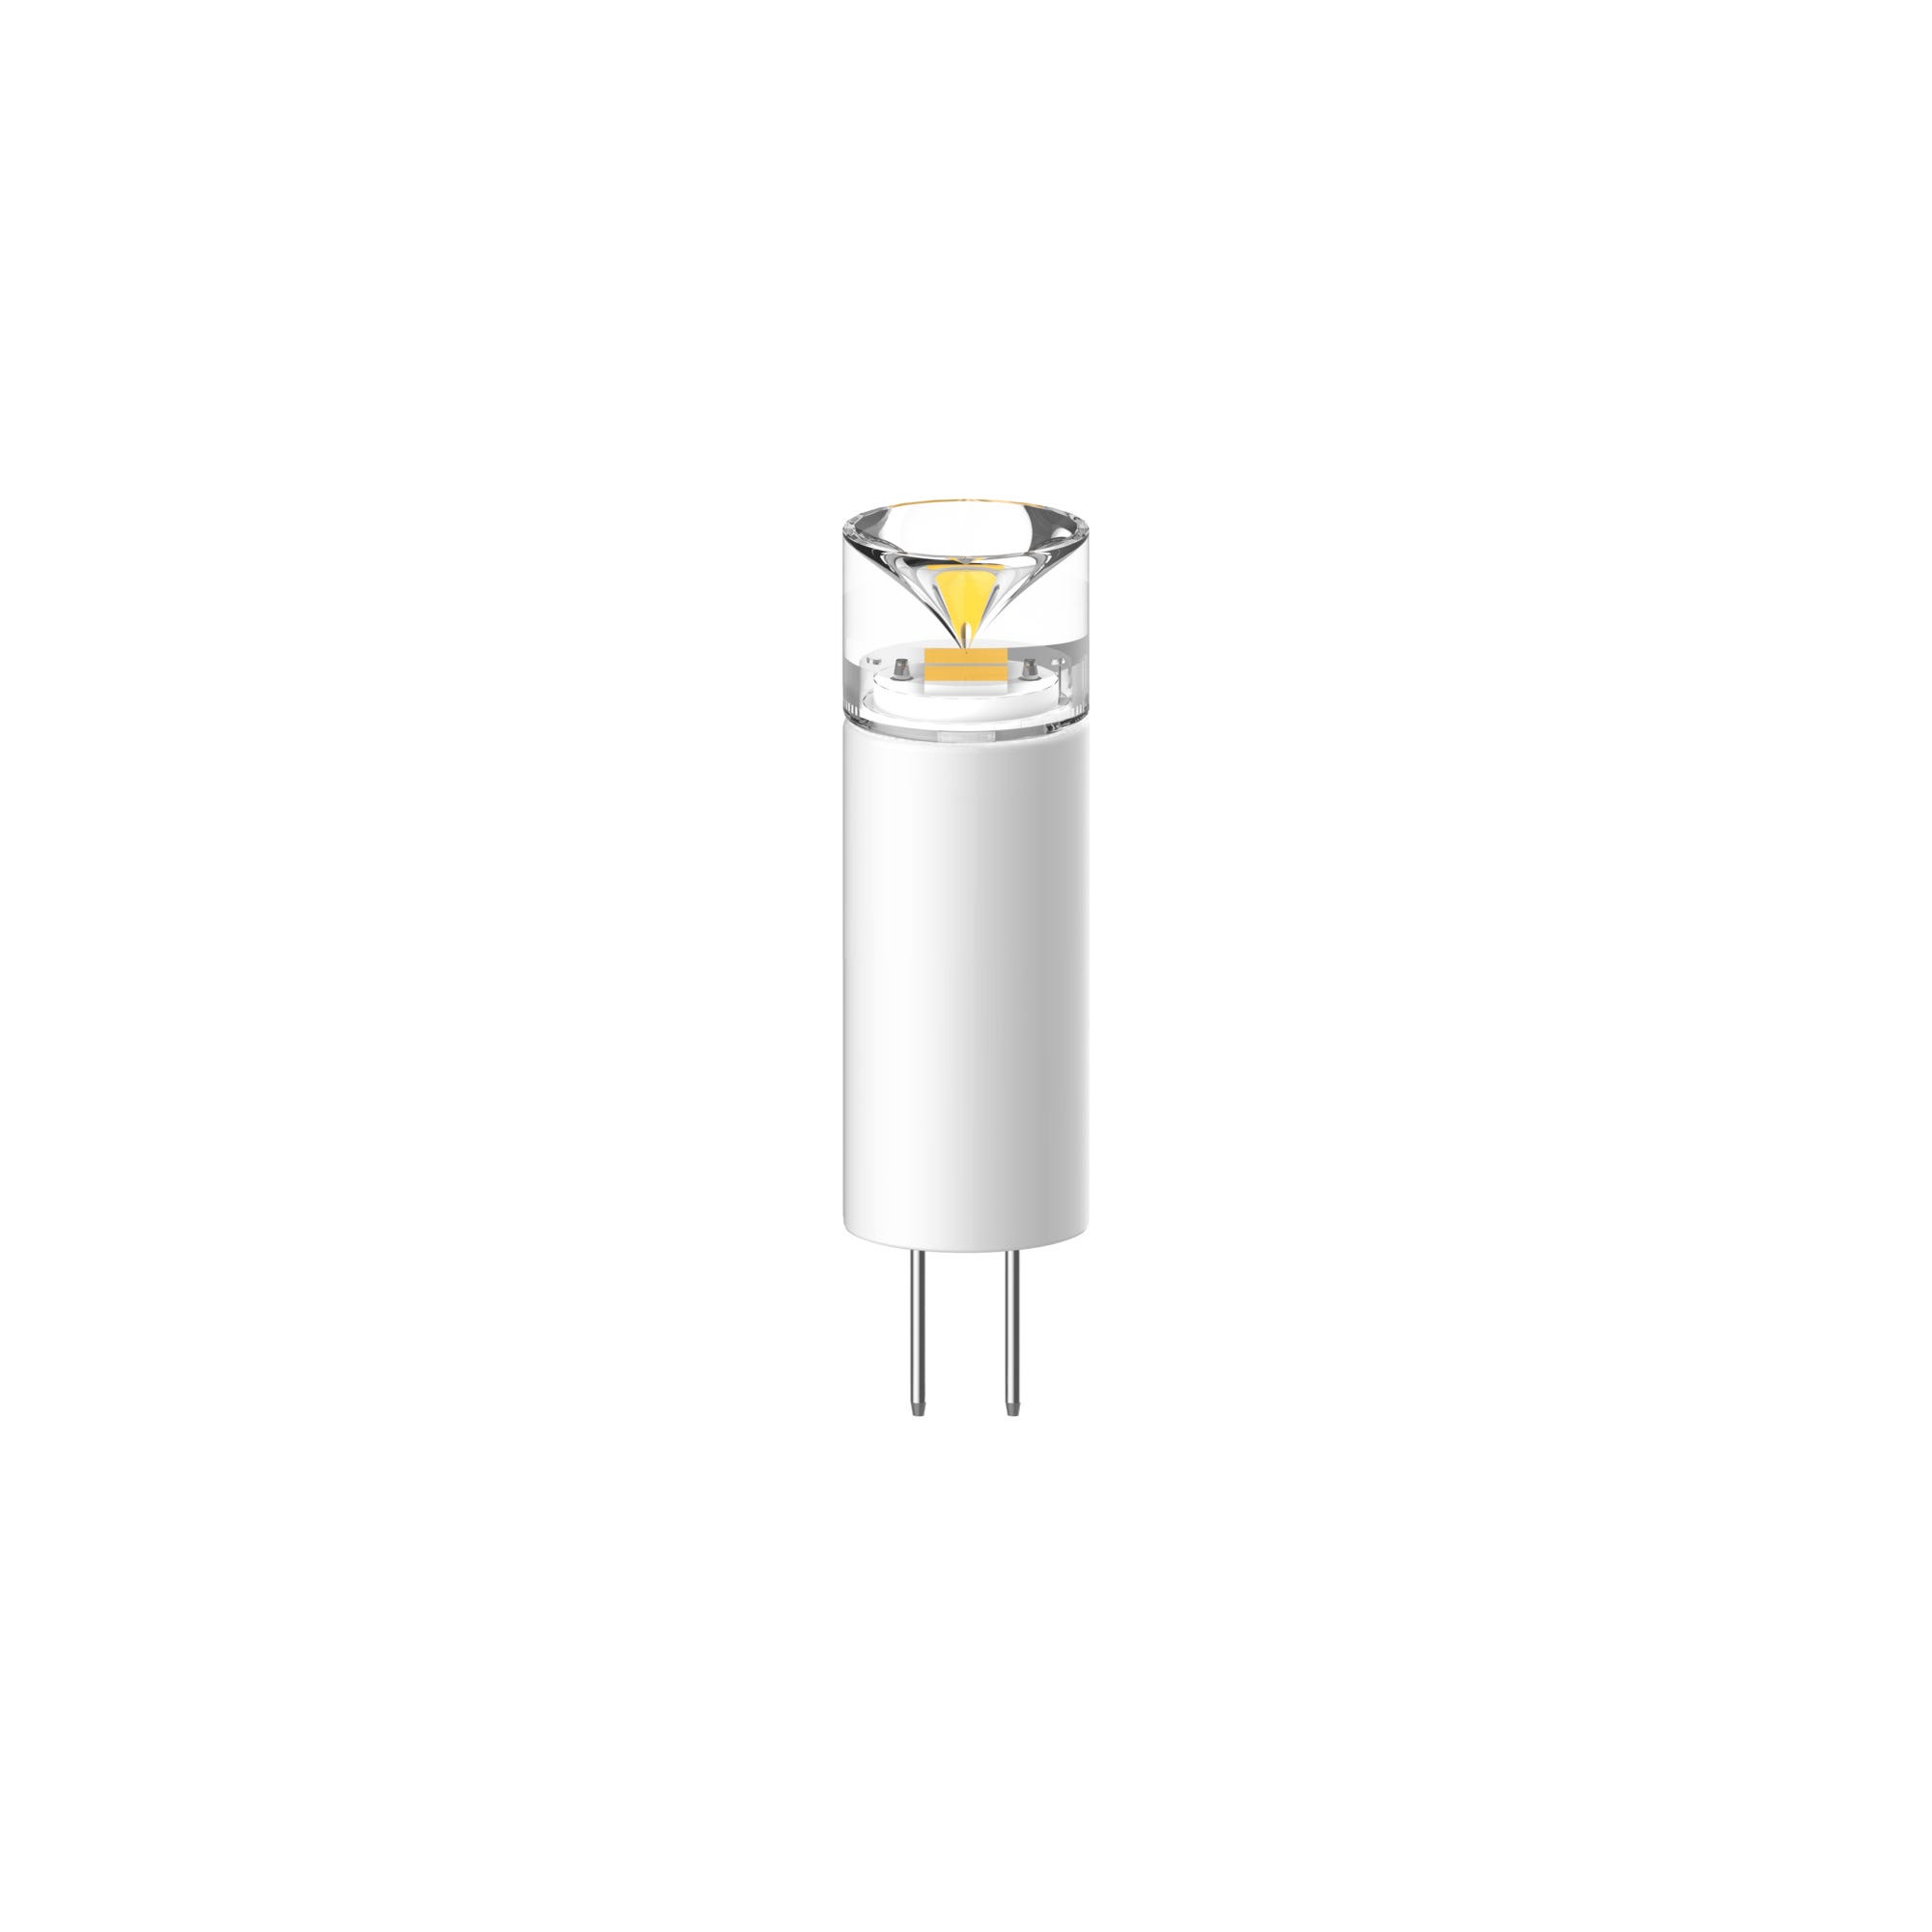 Ampoule LED G4 blanc chaud - NORDLUX 0